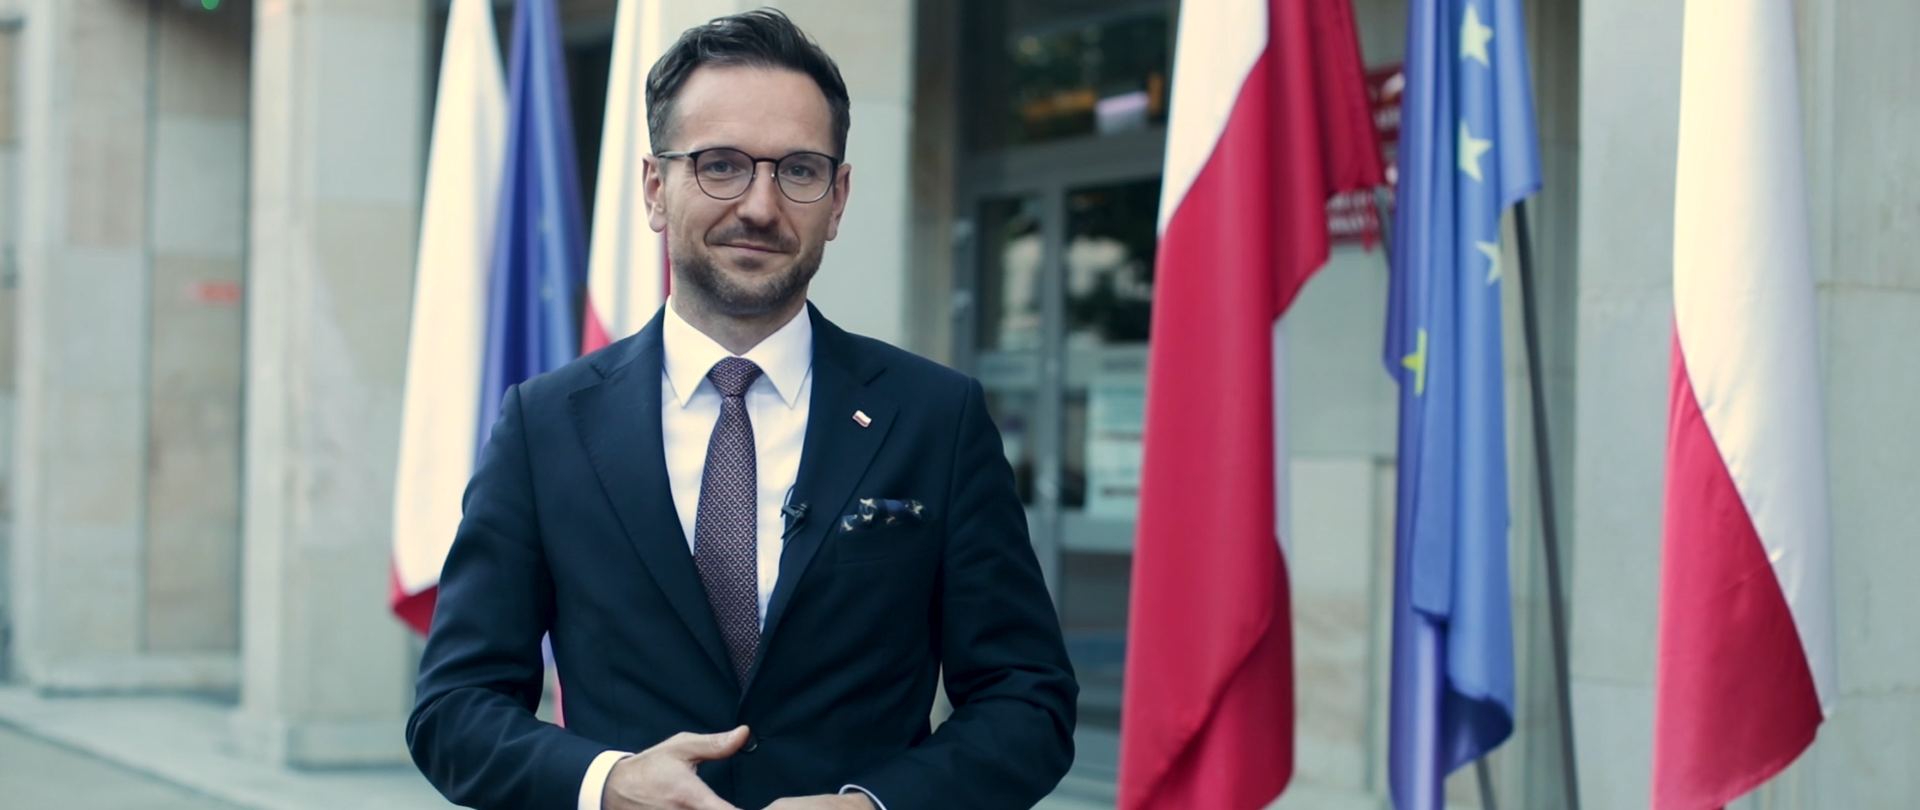 Na zdjęciu wiceminister Waldemar Buda stojący przed Ministerstwem Funduszy i Polityki Regionalnej. W tle flagi Polski i Unii Europejskiej.